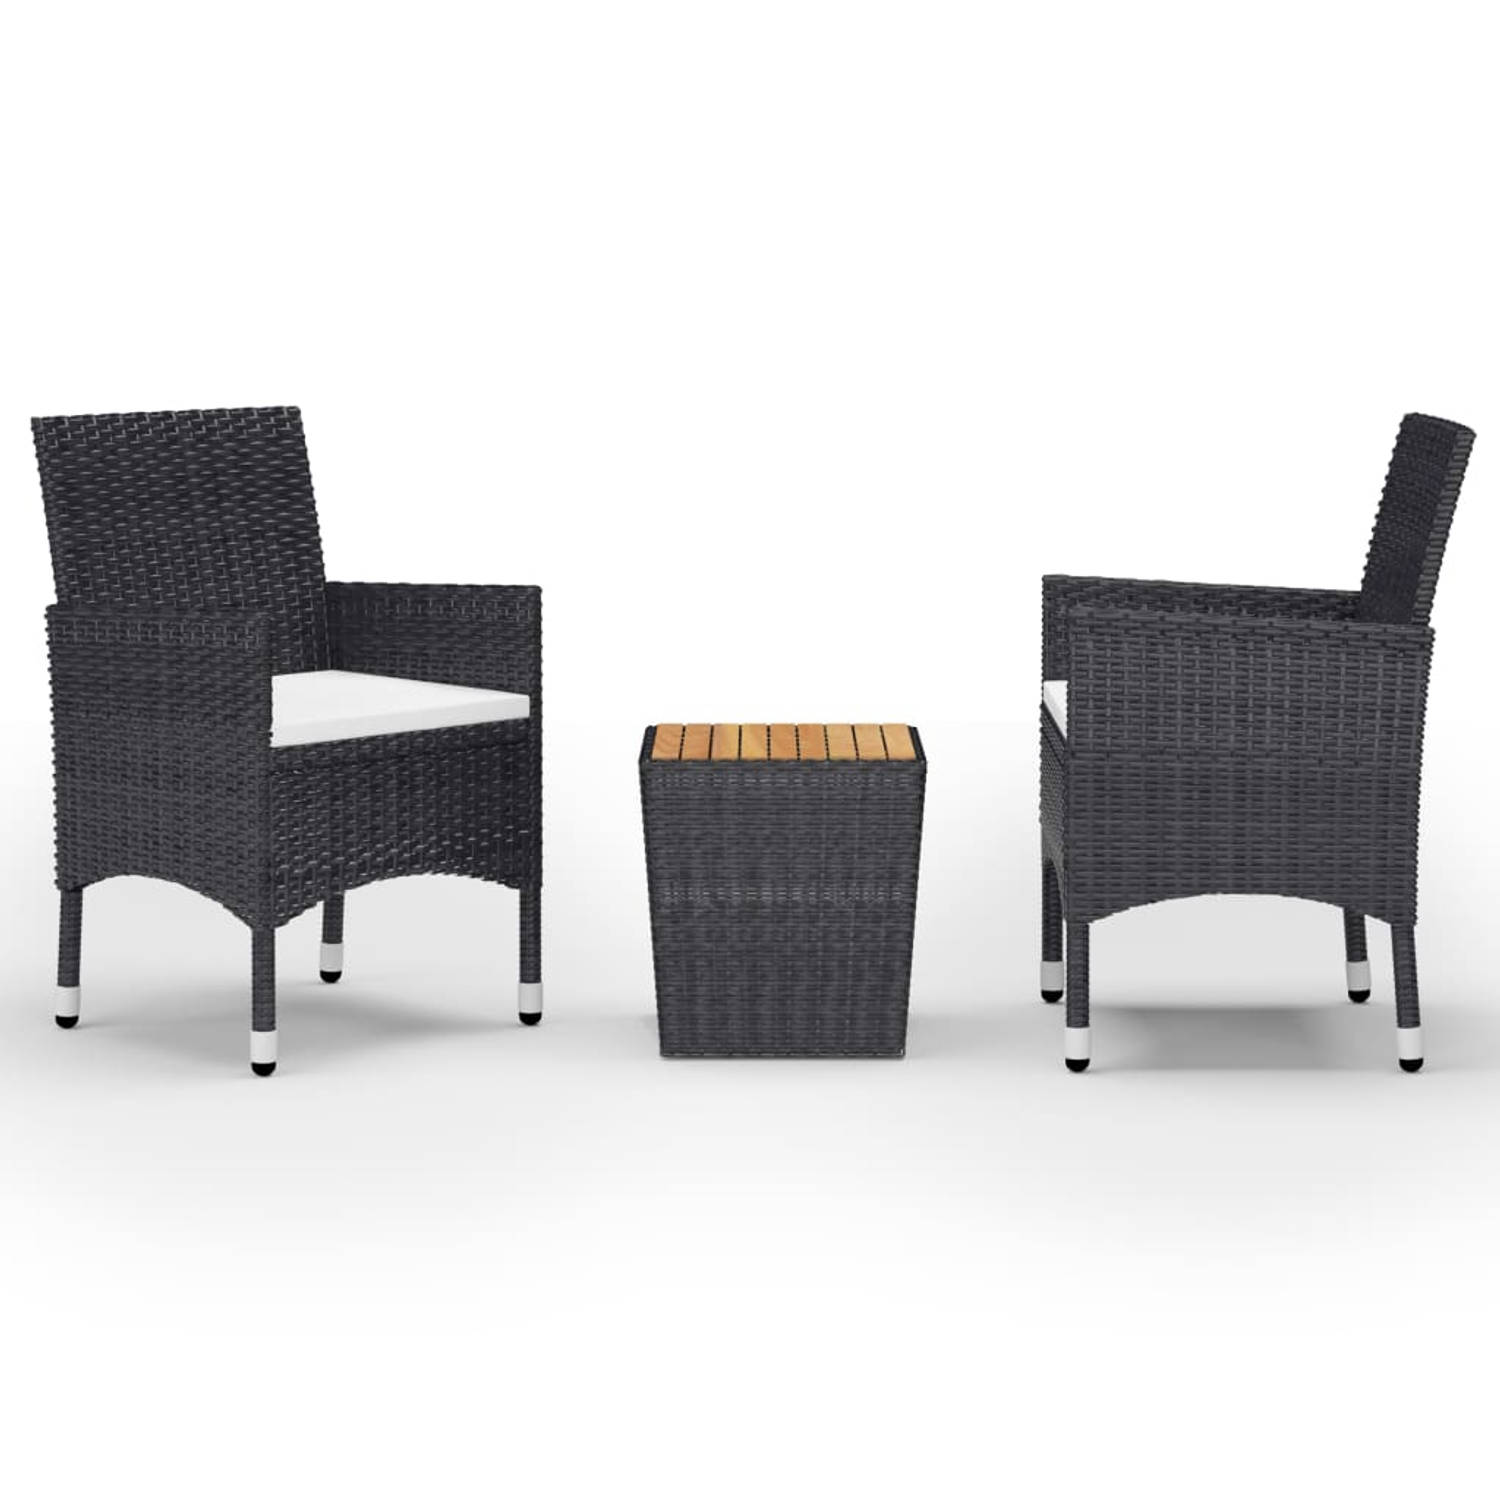 The Living Store 3-delige bistroset - zwart - poly rattan - staal - stof en acaciahout - 41.5 x 41.5 x 43 cm - ergonomisch design - inclusief kussens